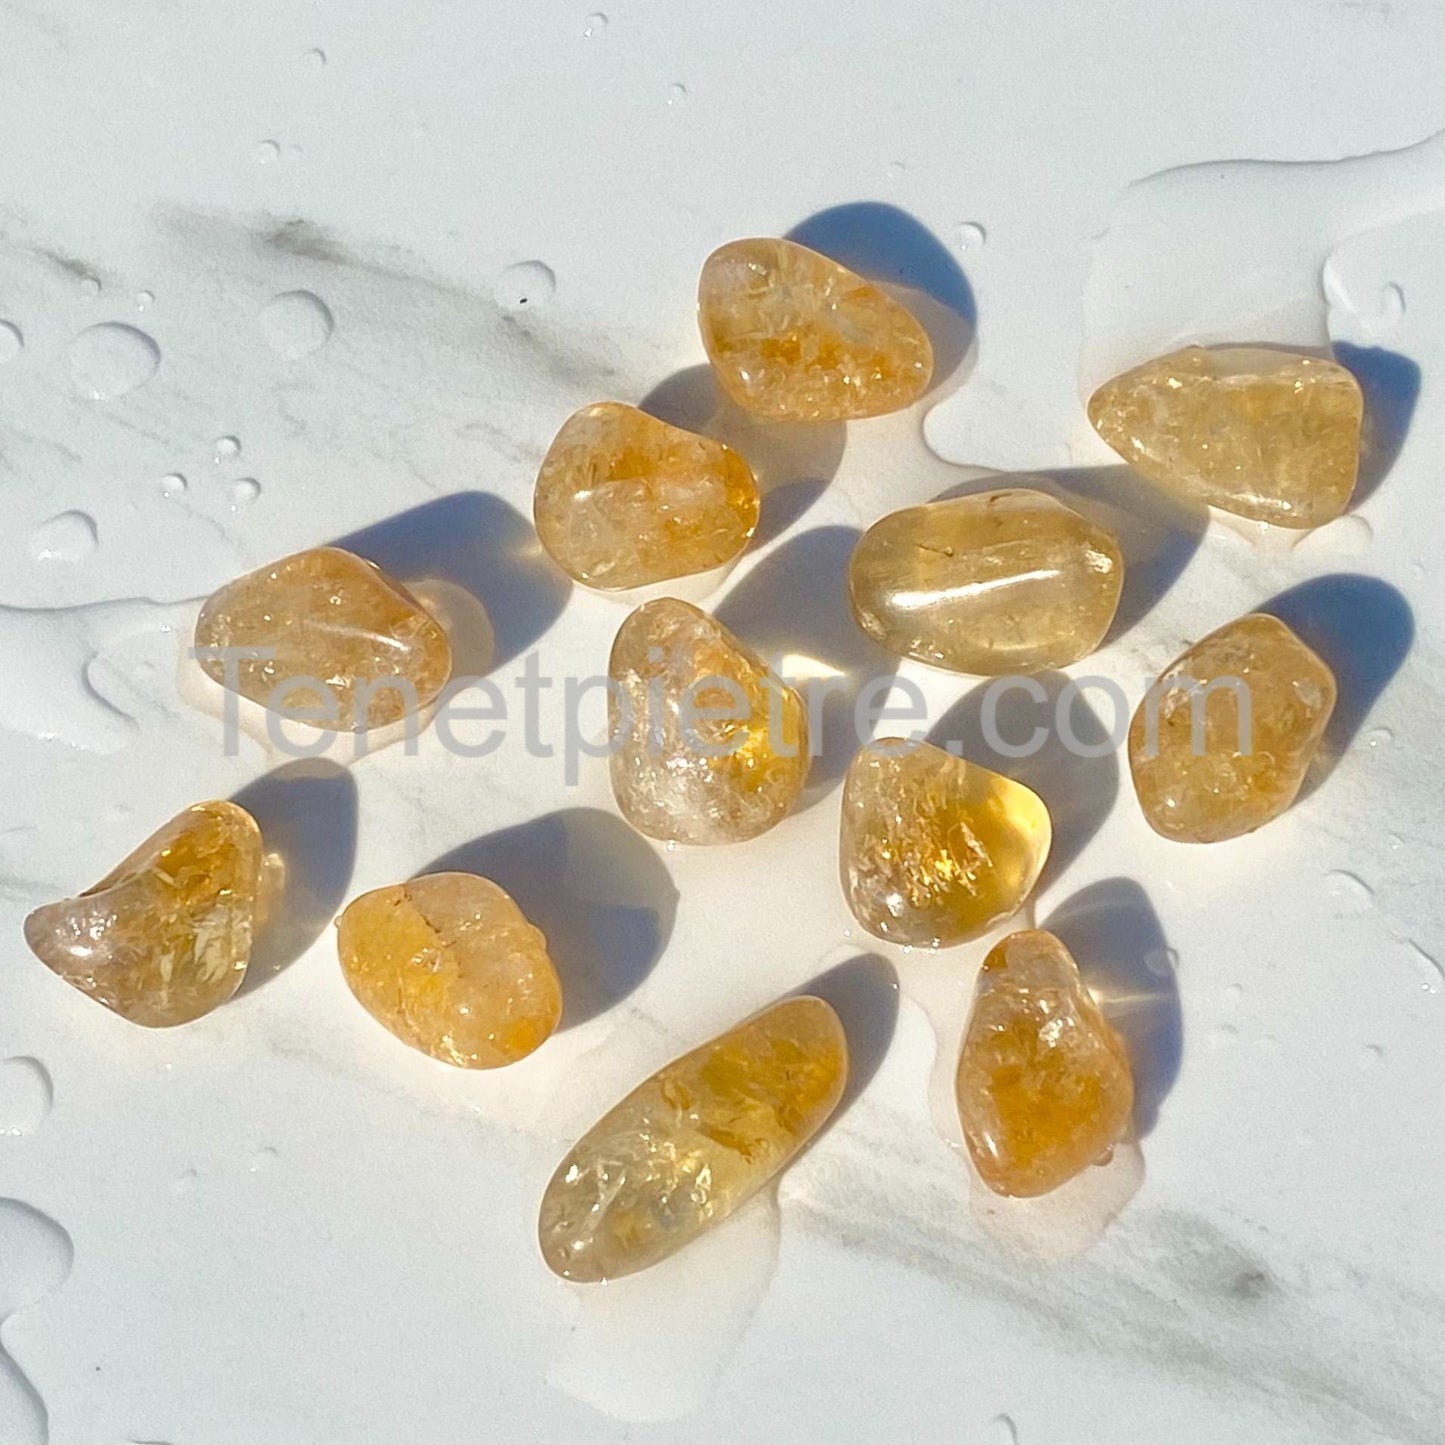 Tumbled "Madera" citrine quartz